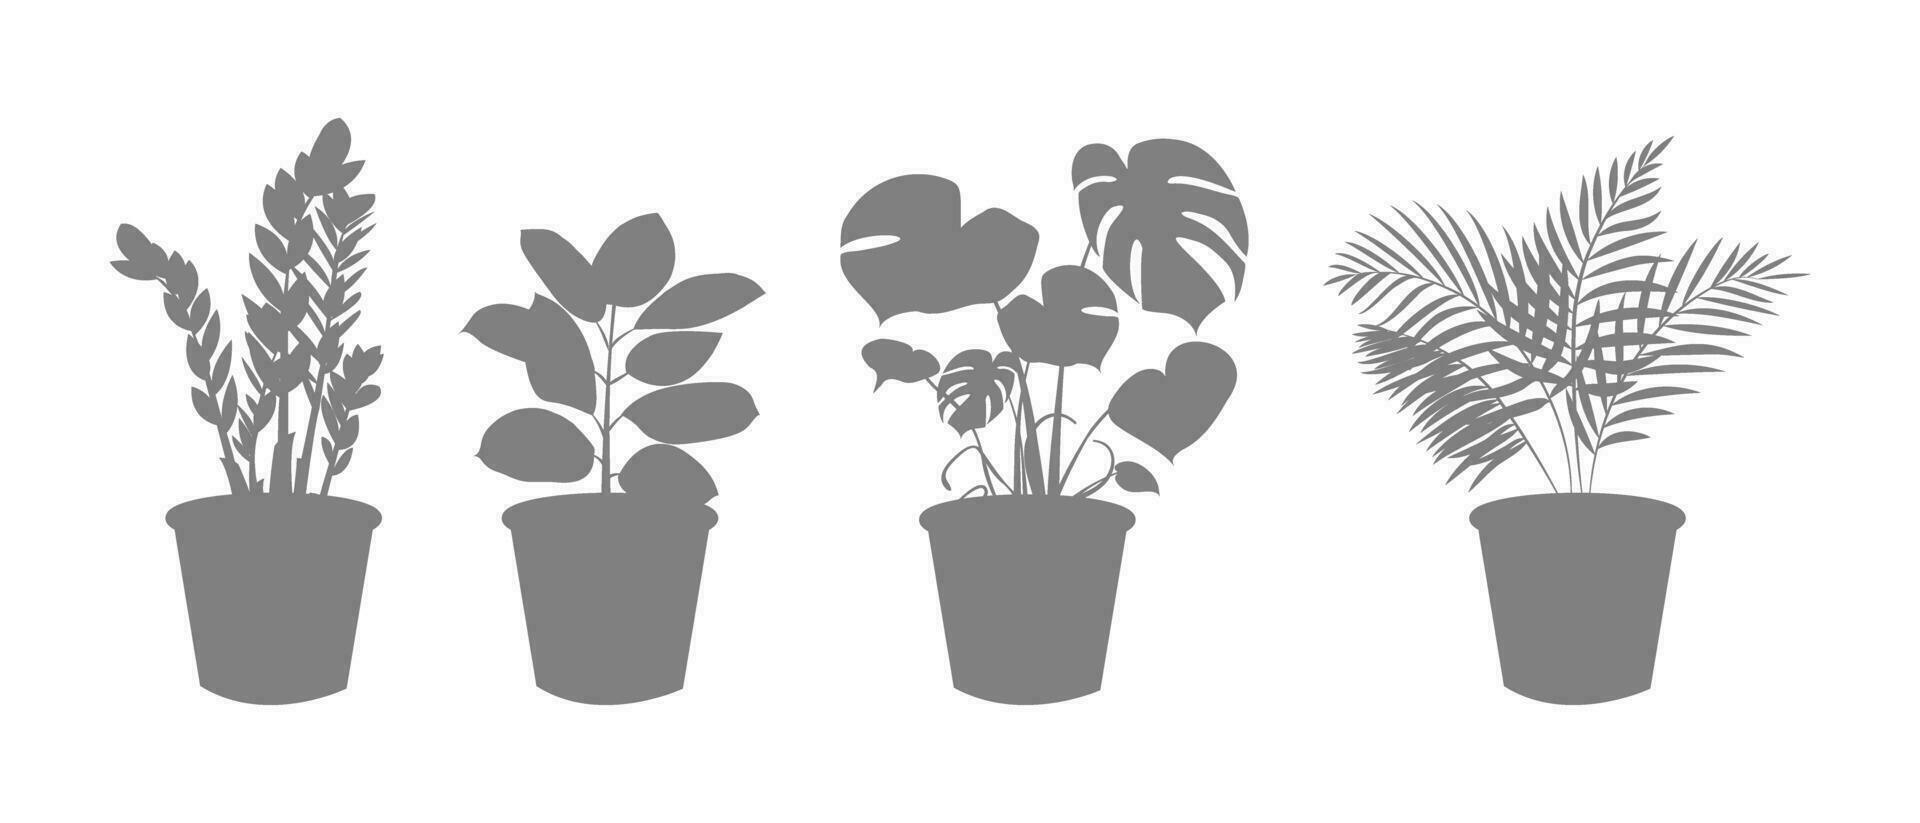 decorativo interior plantas en un maceta silueta. zamiokulkas dólar árbol, ficus y monstruo, palma planta en maceta. hogar flores íconos para jardinería. vector ilustración.